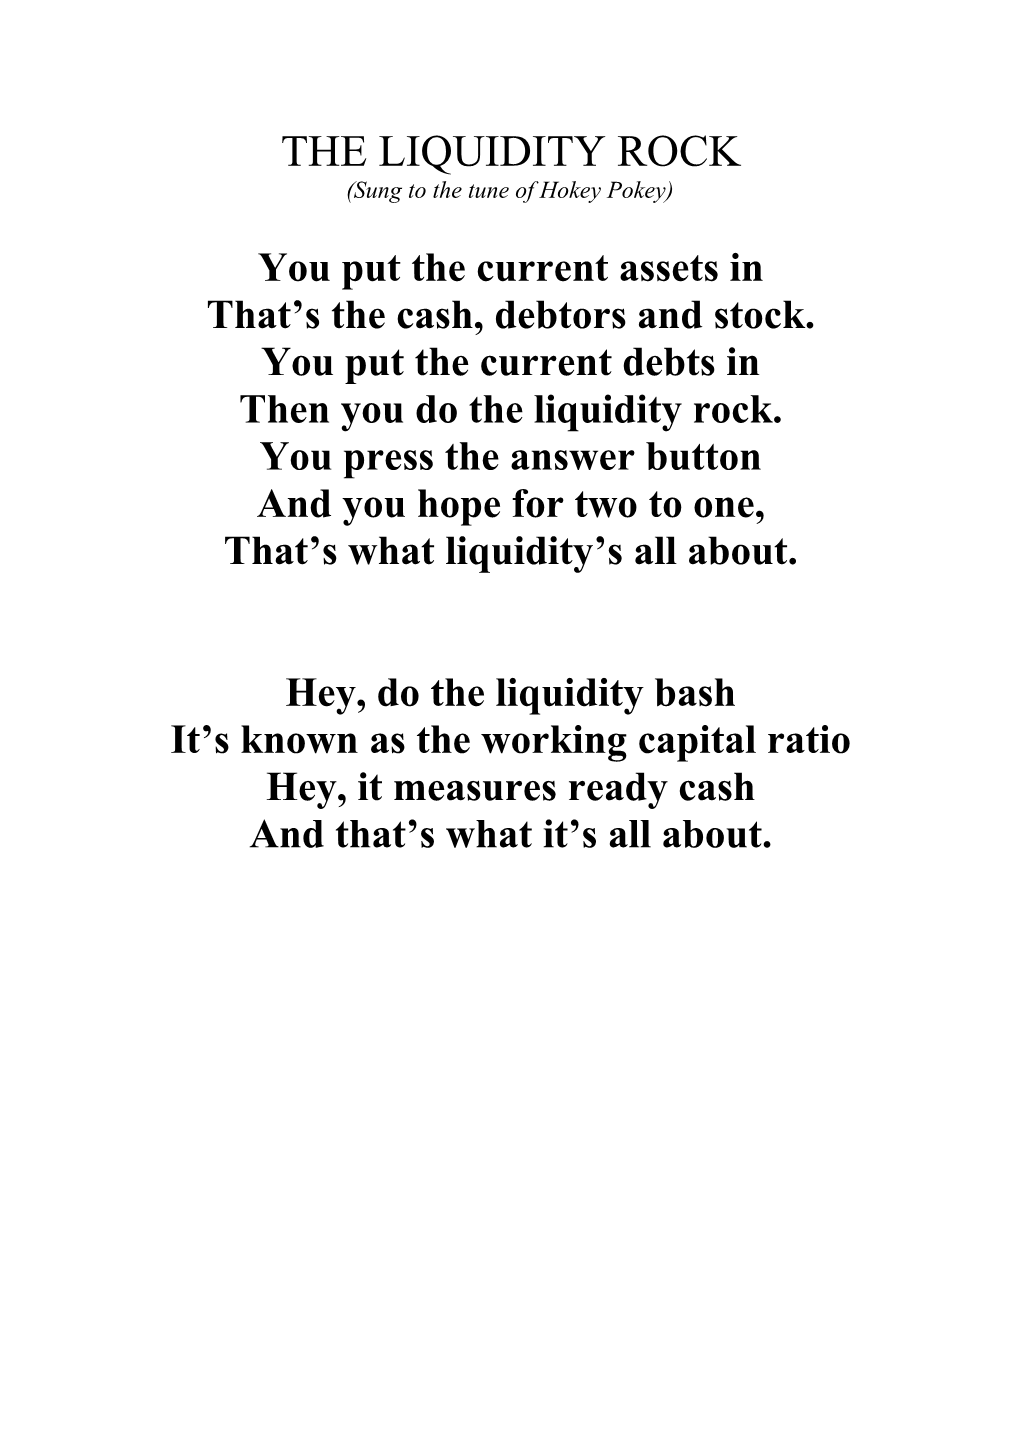 The Liquidity Rock